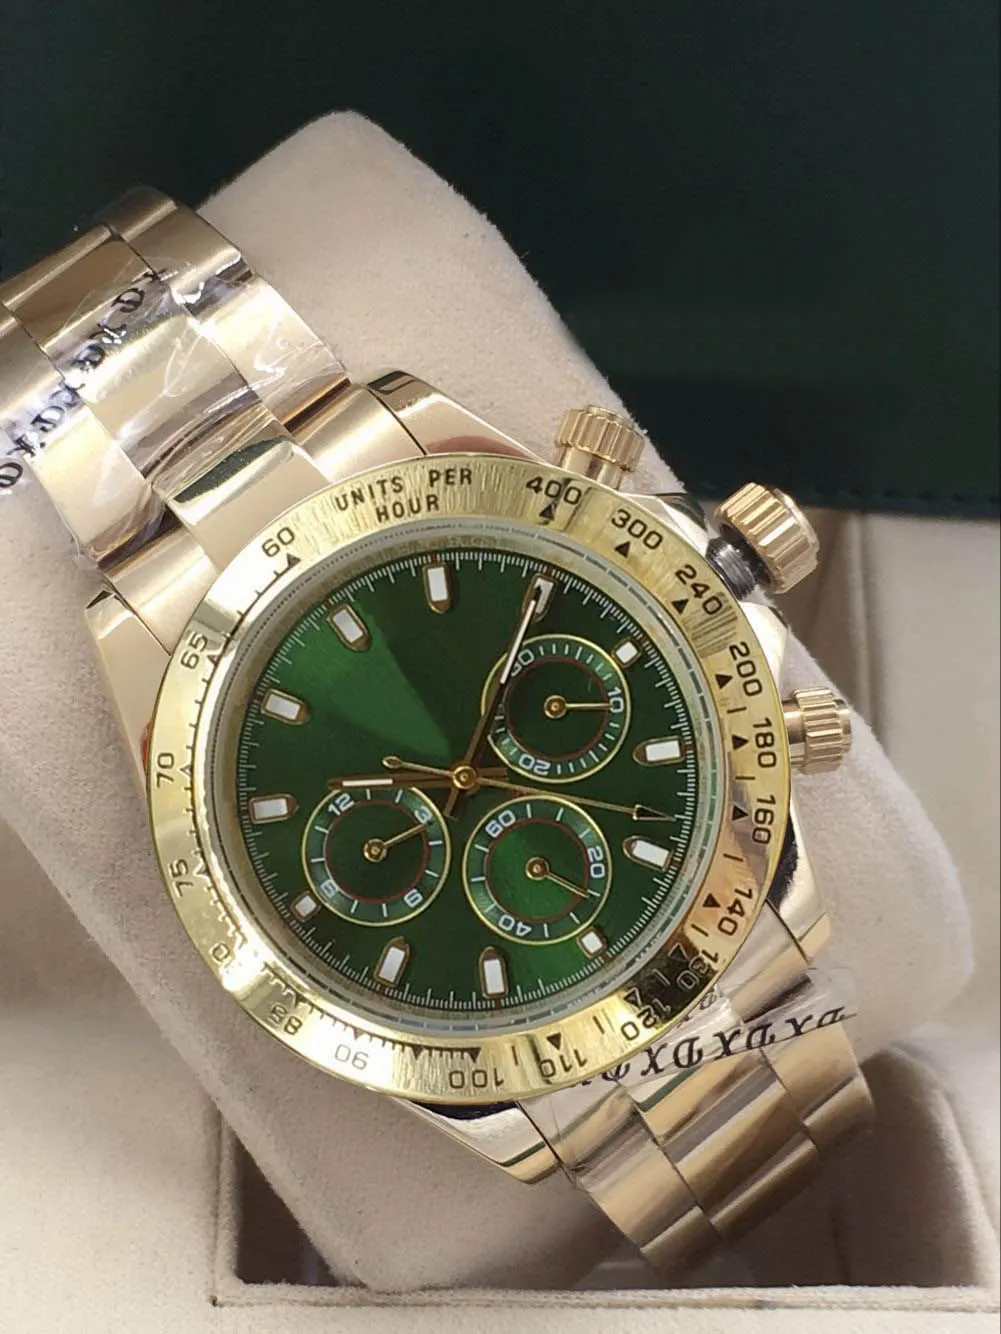 Bekijk heren master design sportstijl automatisch uurwerk gouden roestvrijstalen kast groene wijzerplaat opvouwbare button302E